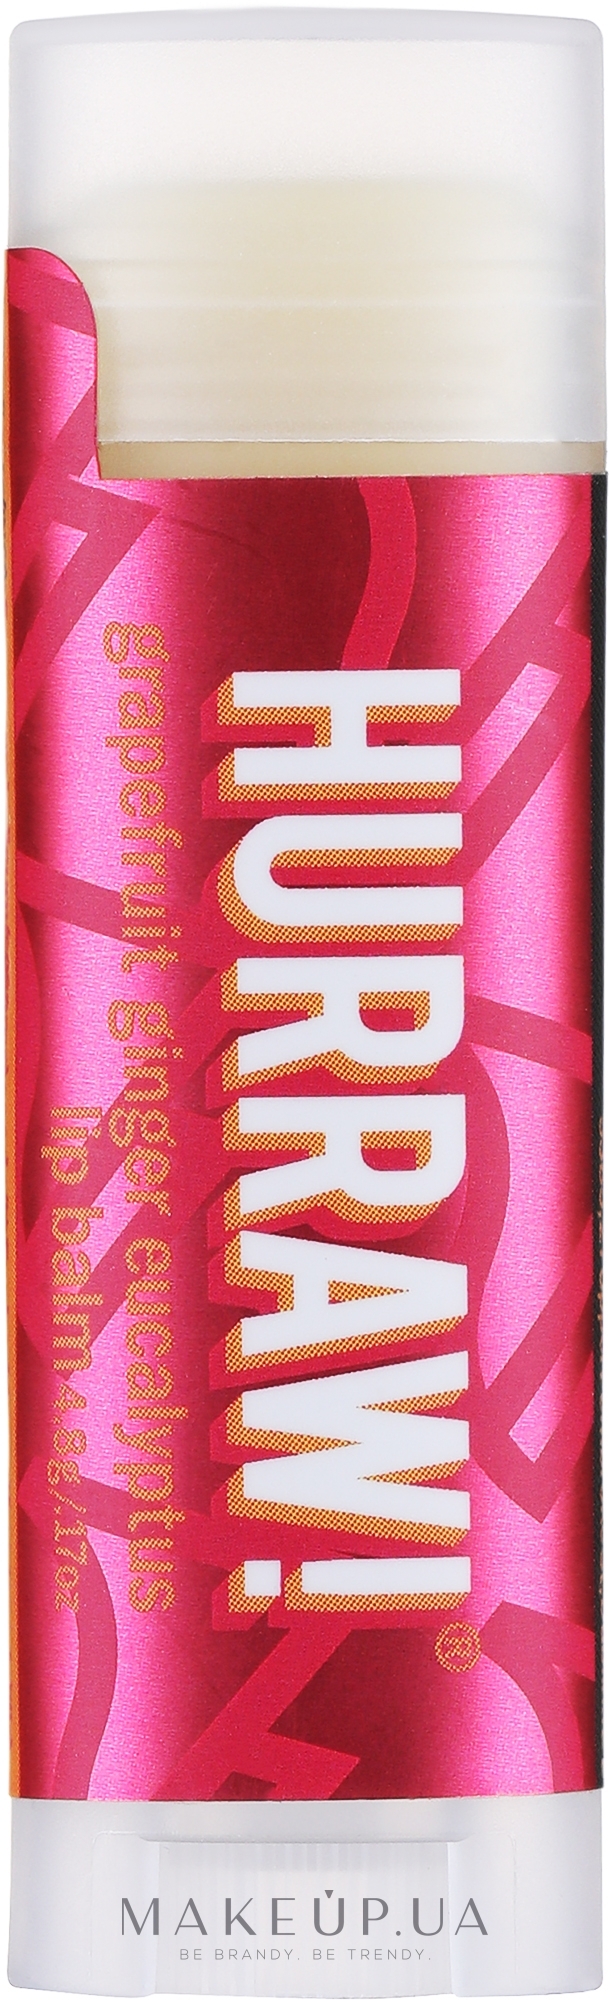 Бальзам для губ "Капха" - Hurraw! Kapha Lip Balm Limited Edition — фото 4.8g